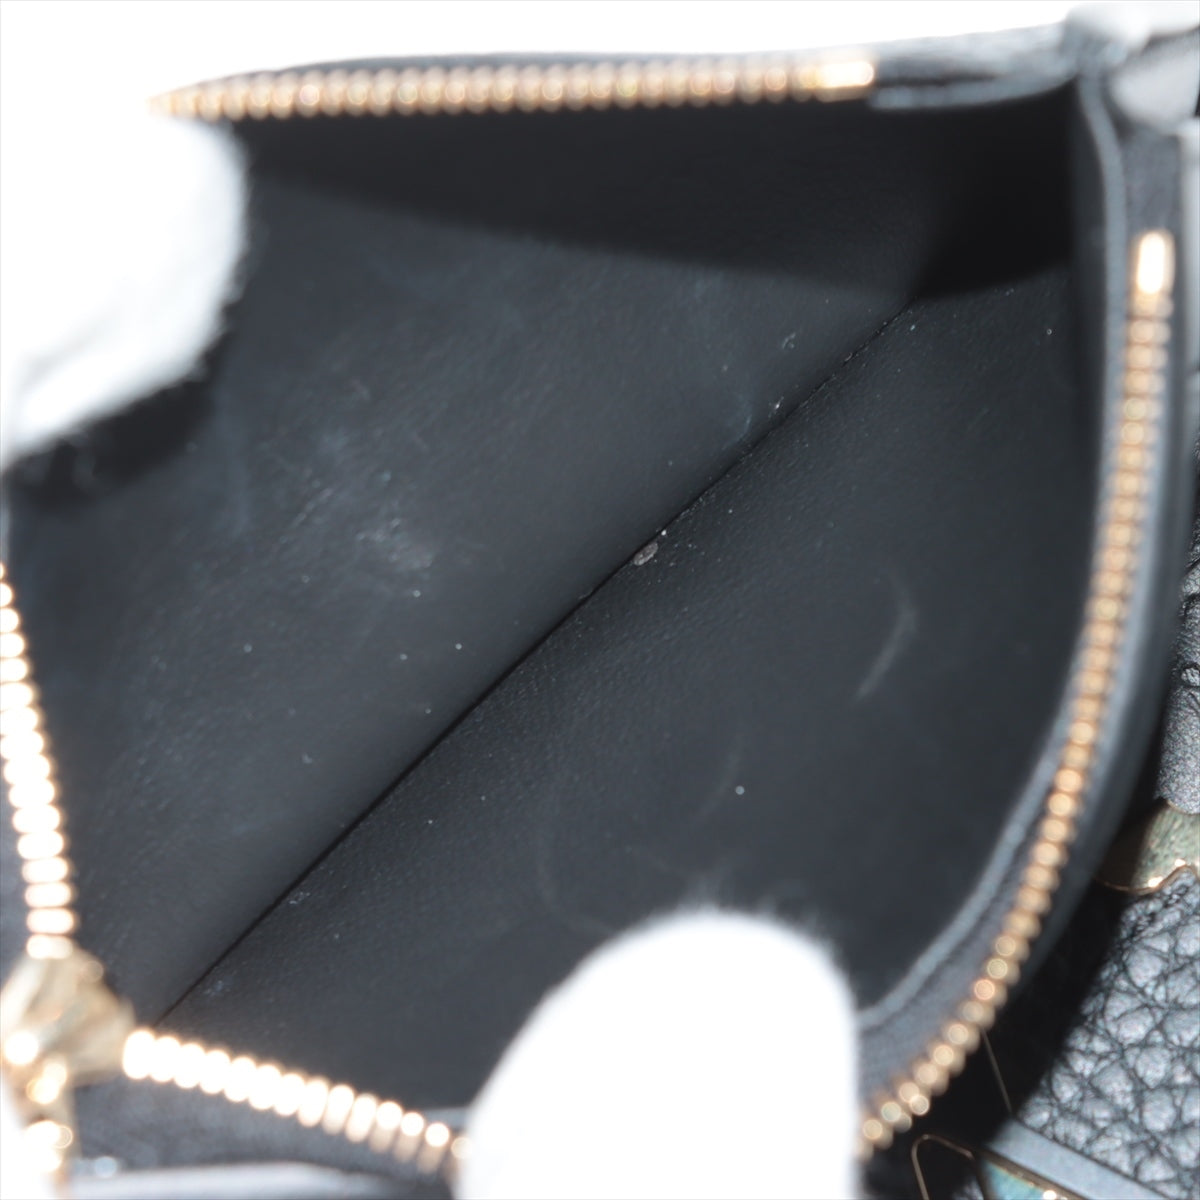 Louis Vuitton  Portfolio Capsine Compact  Noneir Compact Wallet M82764